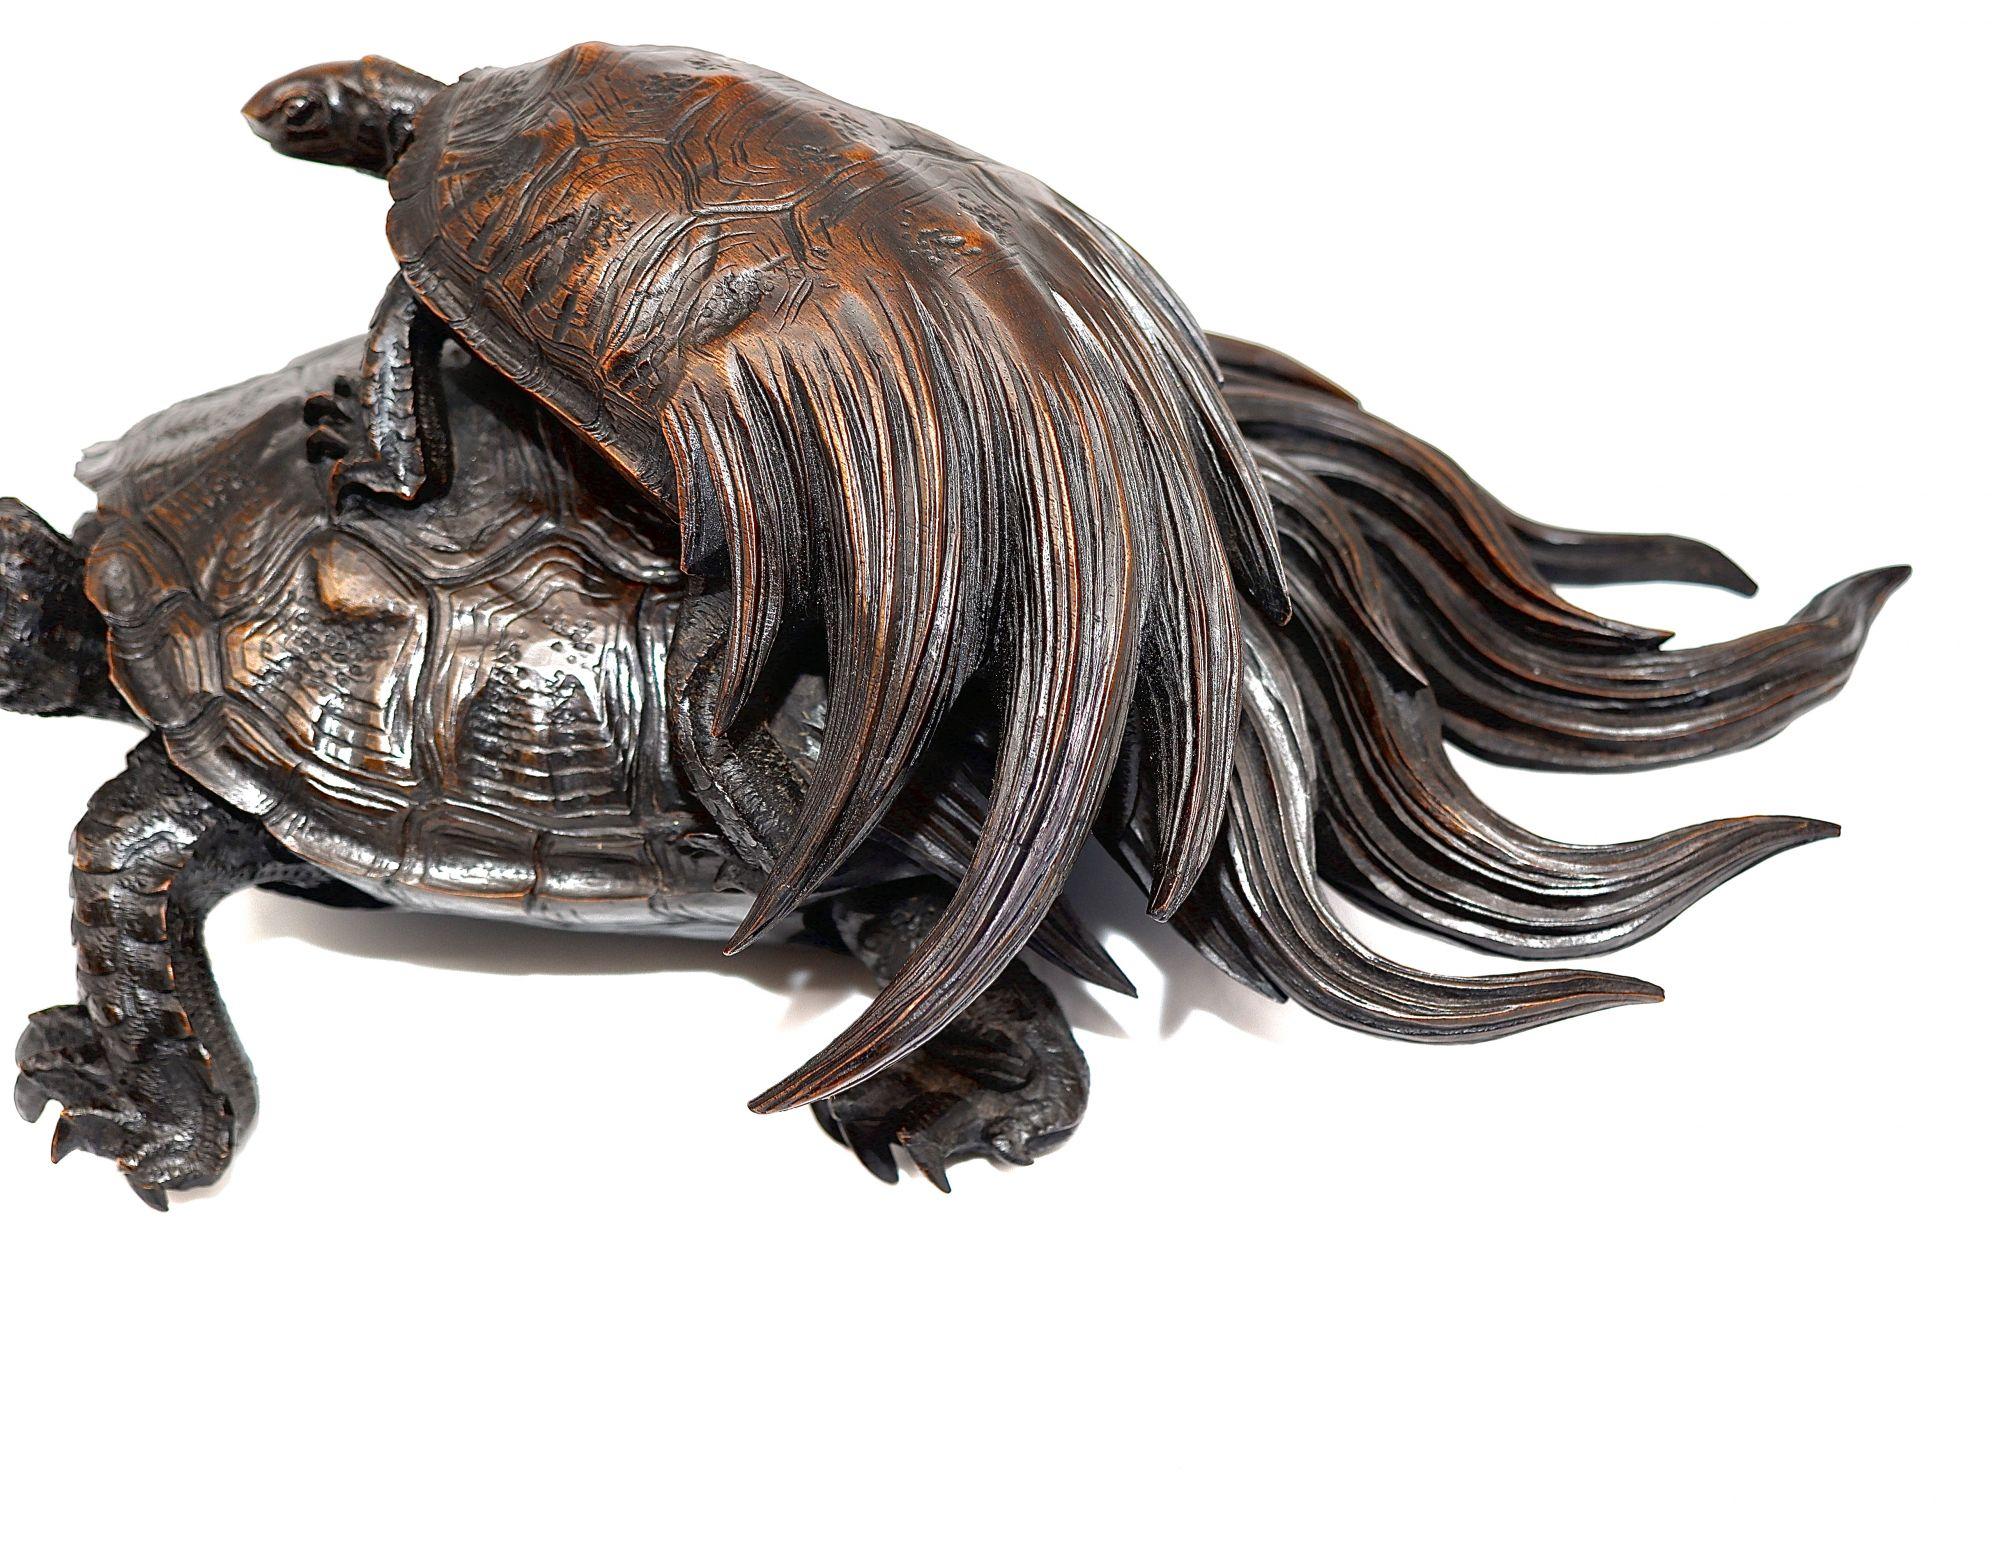 Eine Skulptur von 2 Minogame-Schildkröten mit ihren charakteristischen fächerartigen Schwänzen. Die kleinere Schildkröte steht in der Nähe der größeren Schildkröte. Dies ist eine ausgezeichnete japanische Hartholzschnitzerei aus dem späten 18.